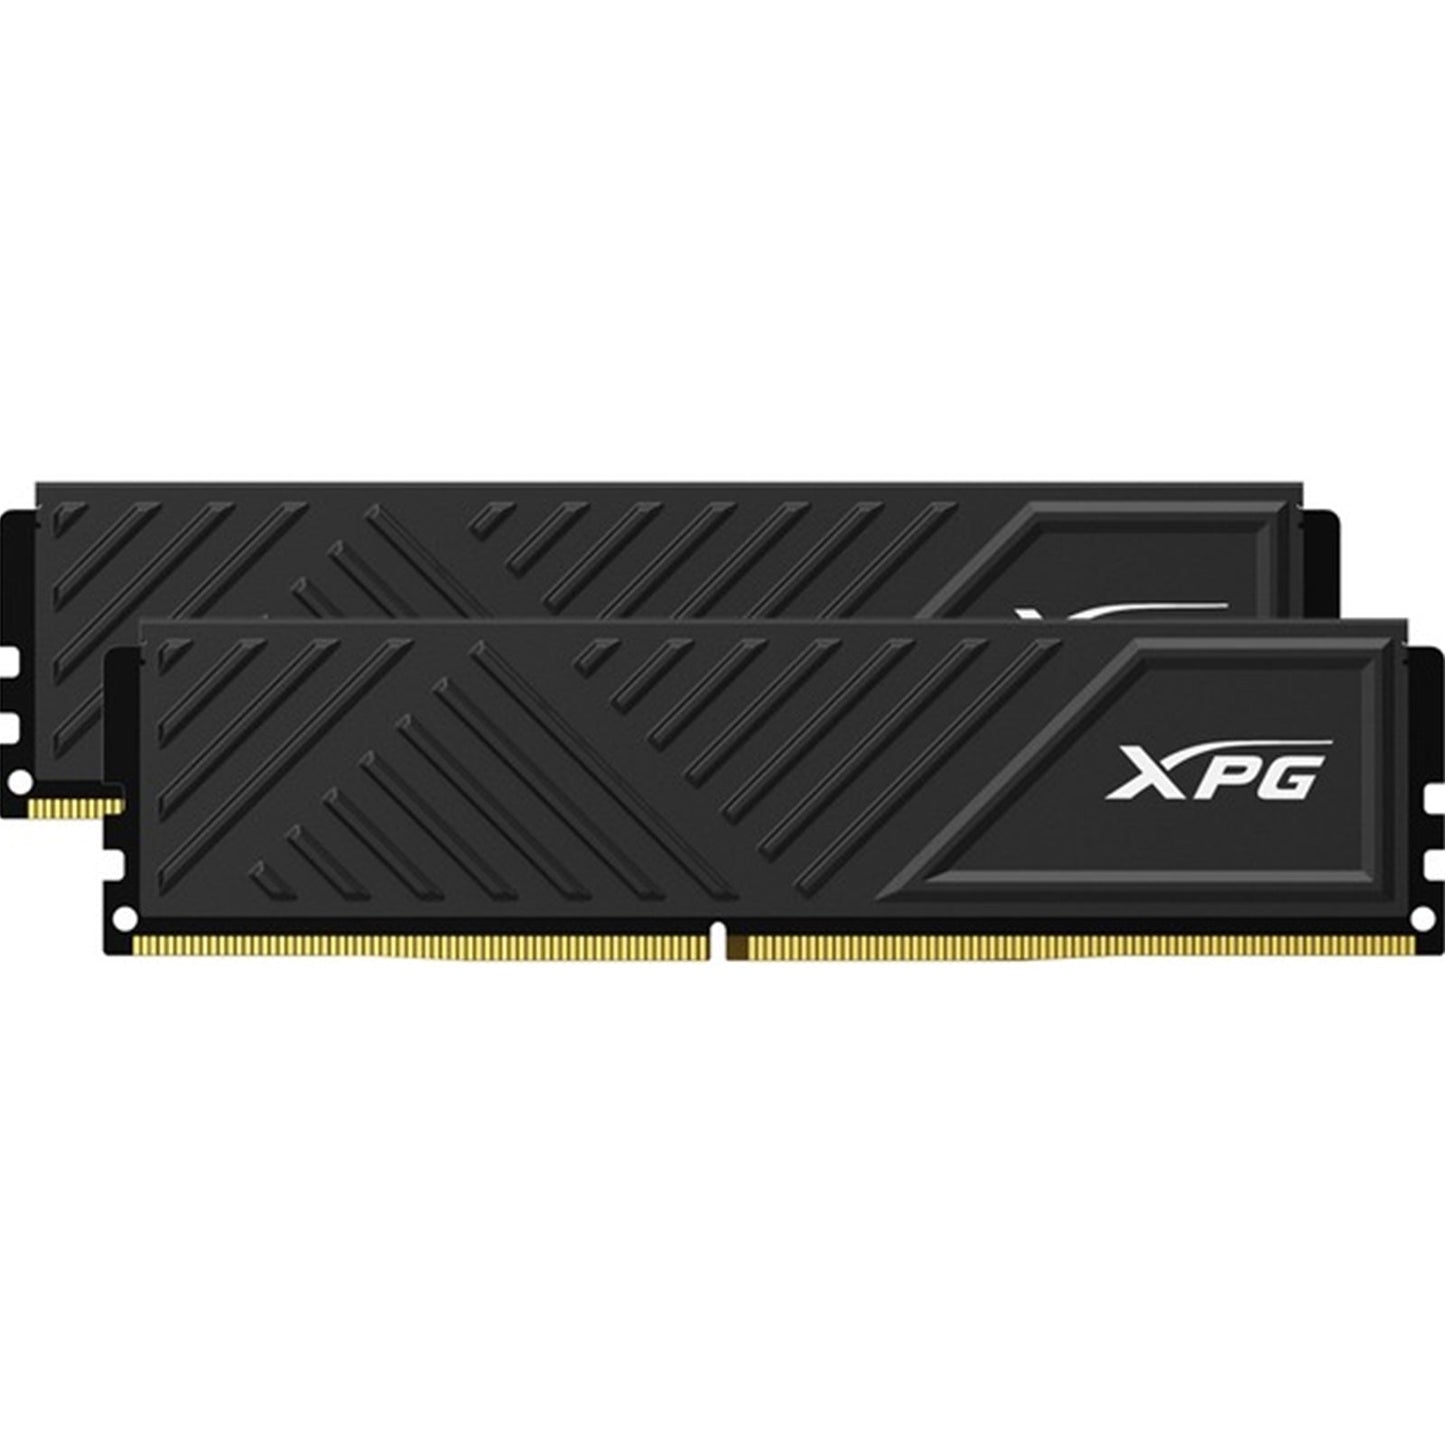 Adata XPG Gammix D35 32GB (2 x 16GB) DDR4 3200MHz RAM